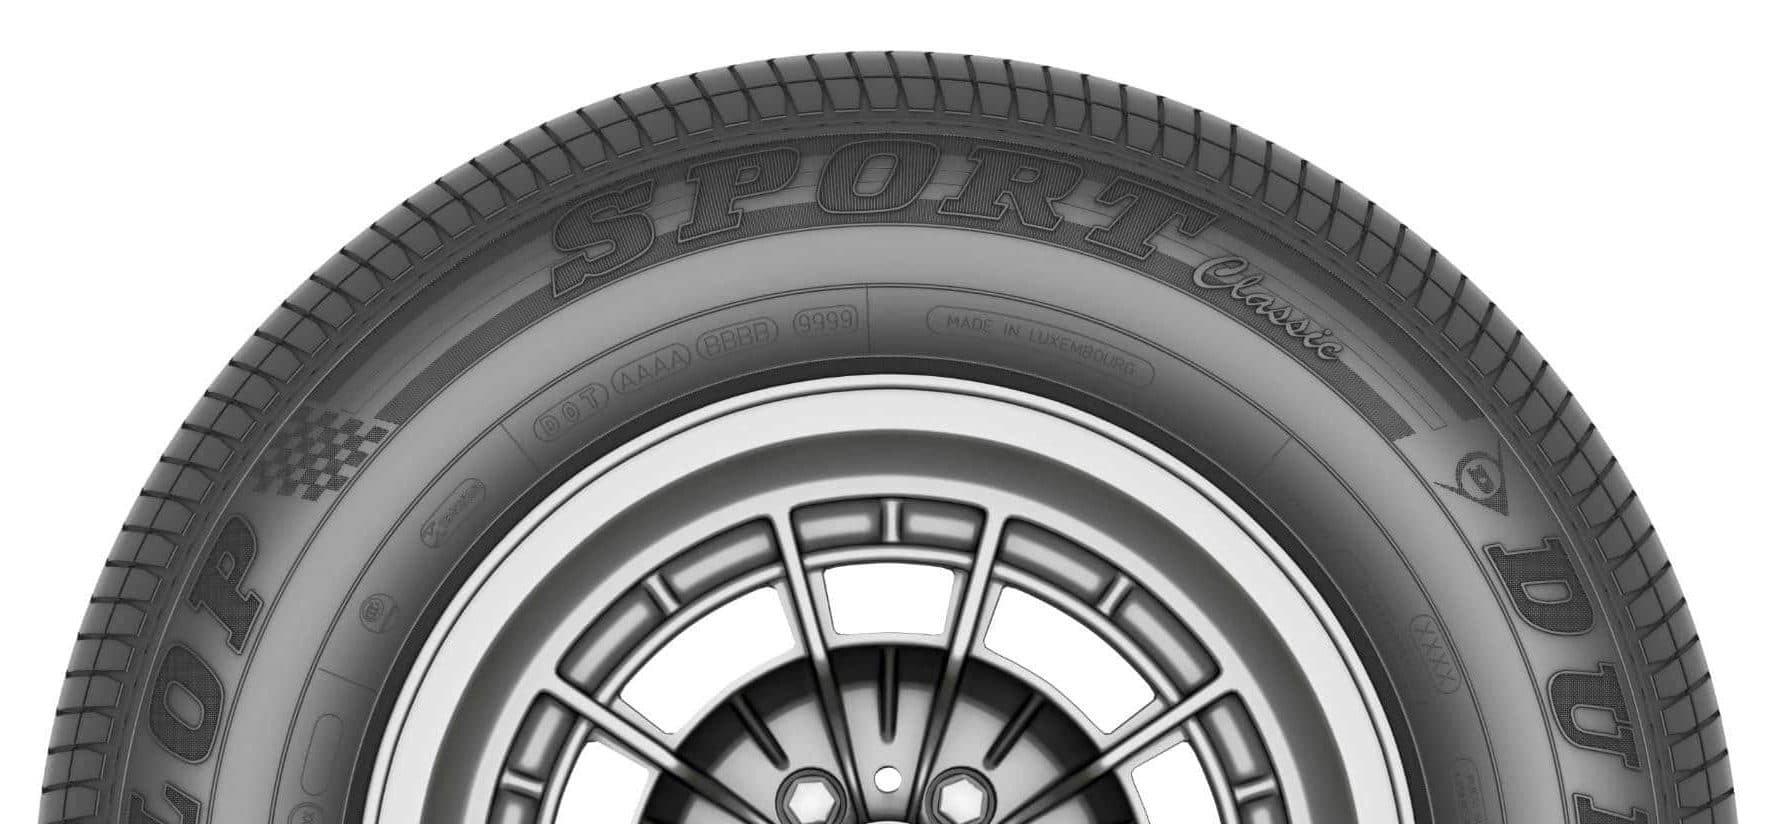 Date de fabrication d'un pneu : tout savoir sur l'âge des pneus - Articles  Auto - AutoPassion